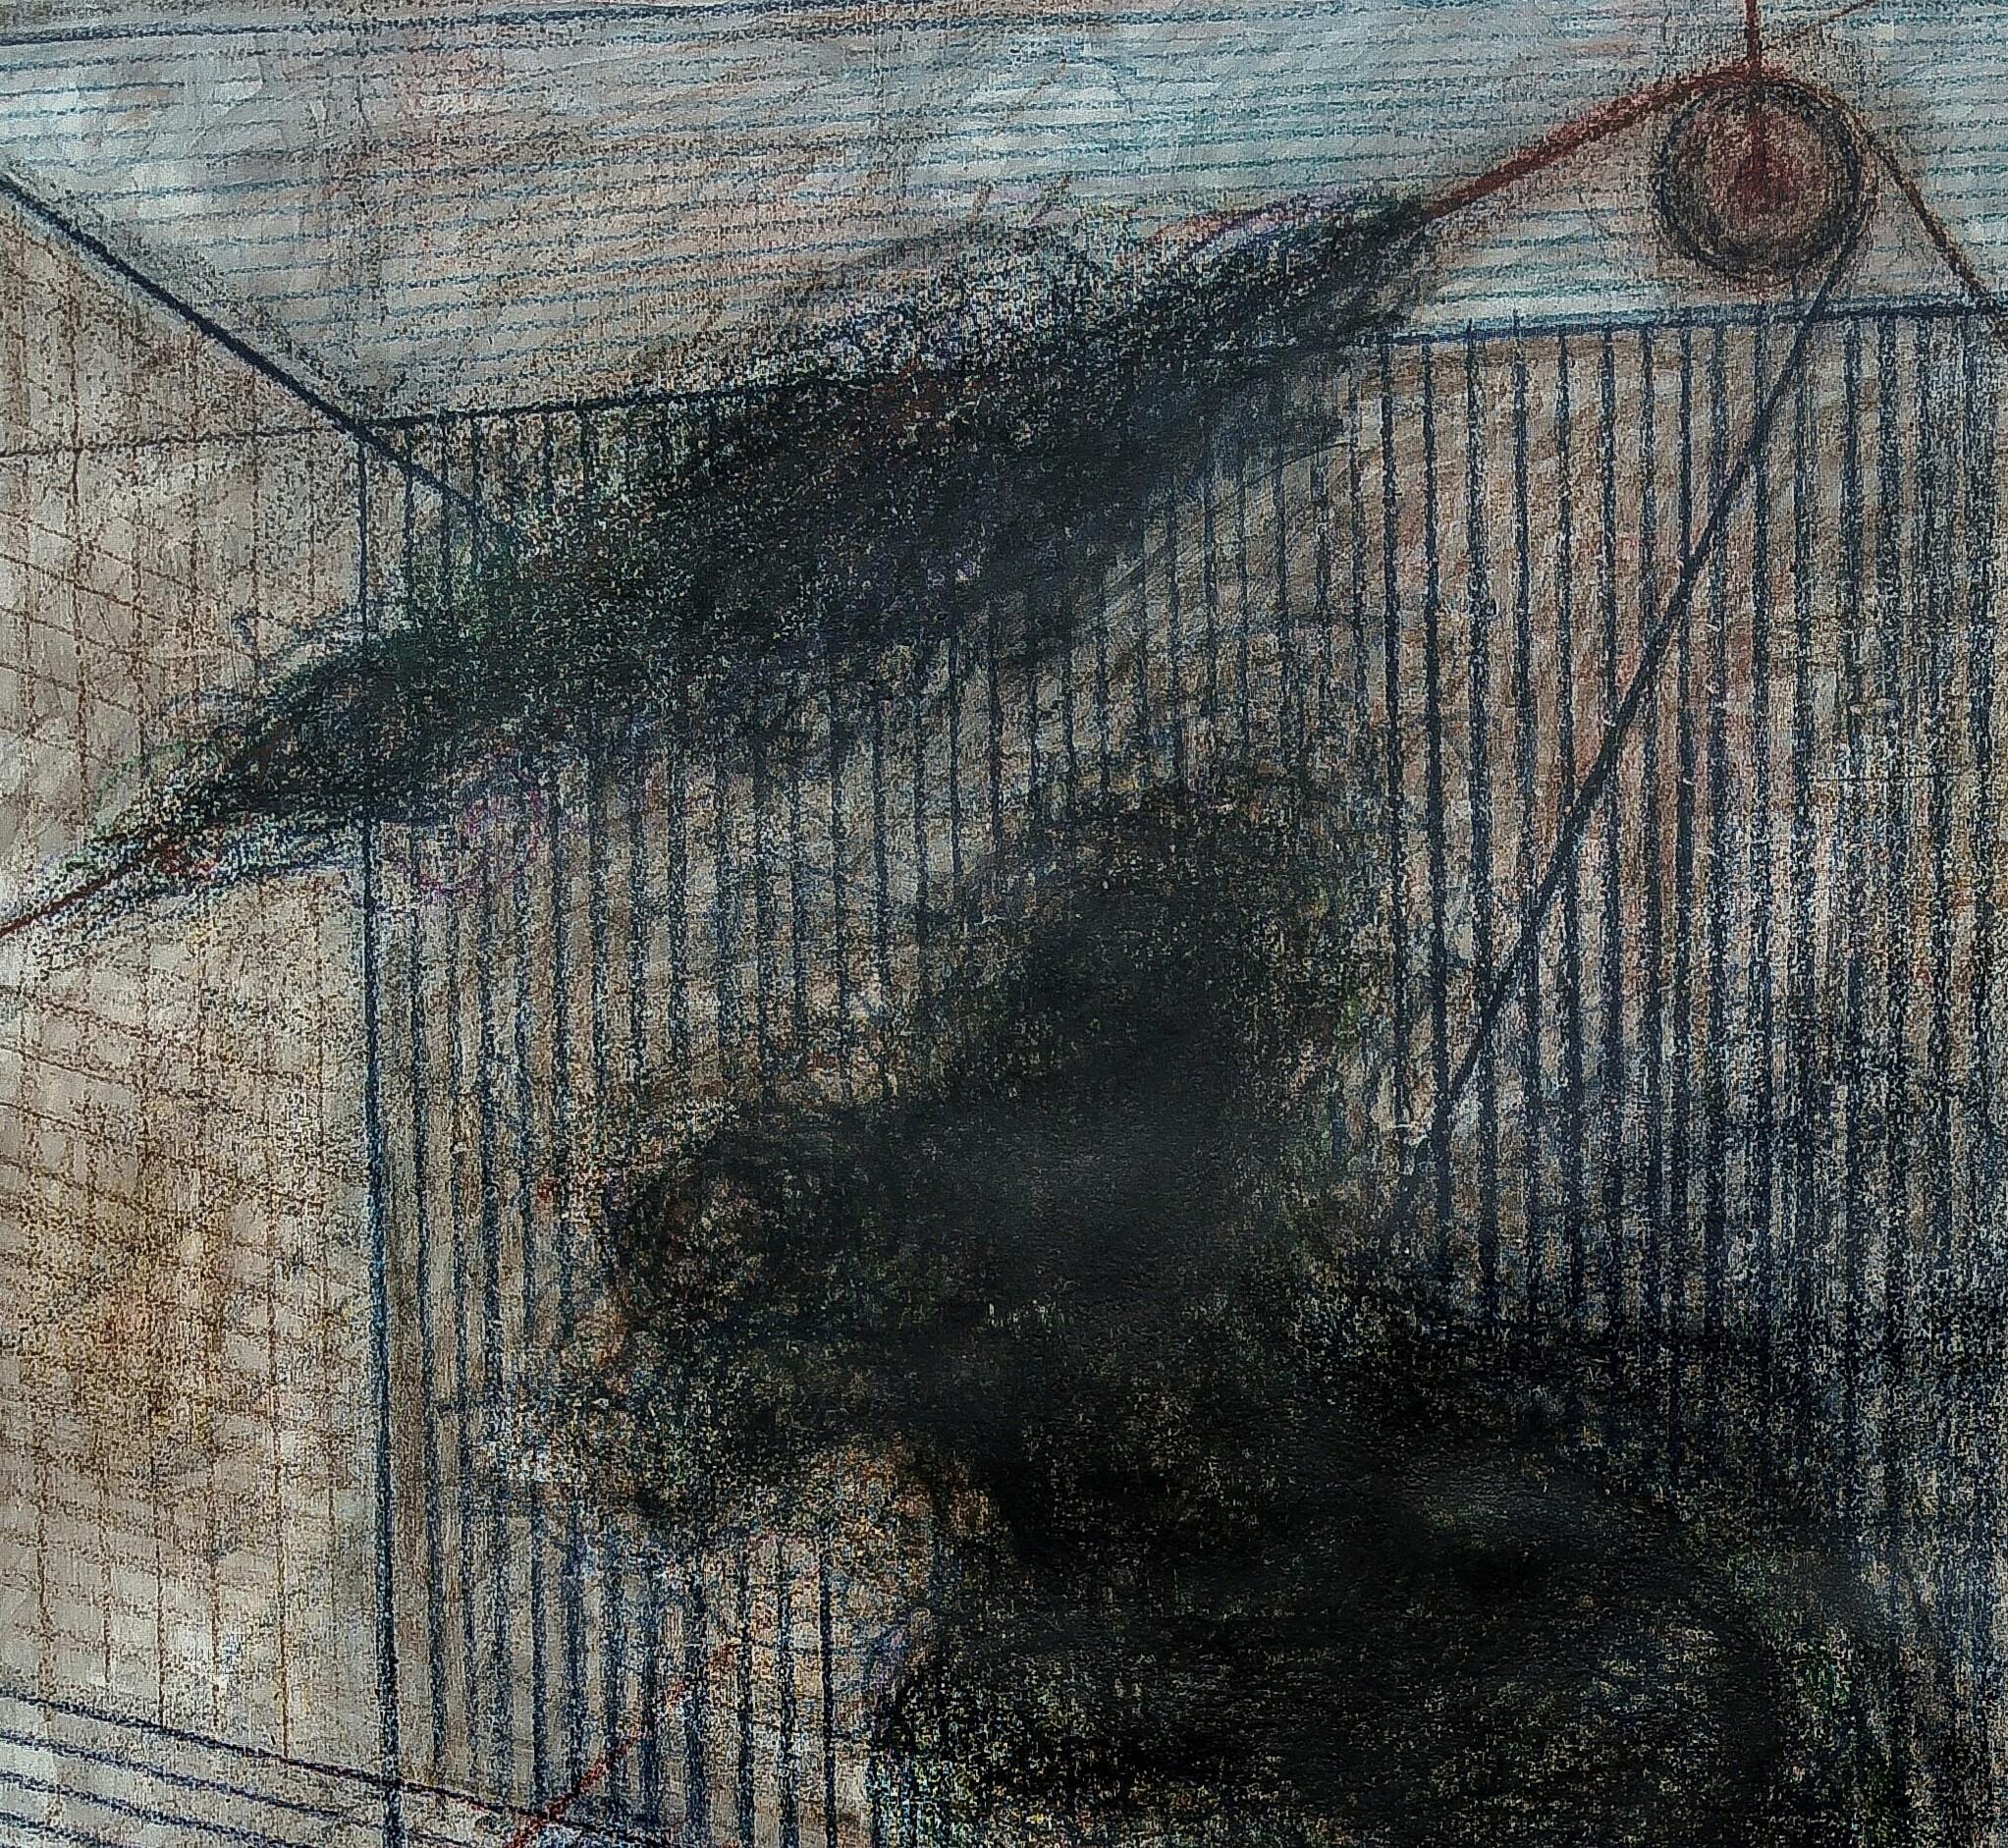 Ohne Titel 04 - Zeitgenössisch, Abstrakte Zeichnung auf Leinwand, Minimalistisch, Gestisch (Grau), Abstract Painting, von Zsolt Berszán